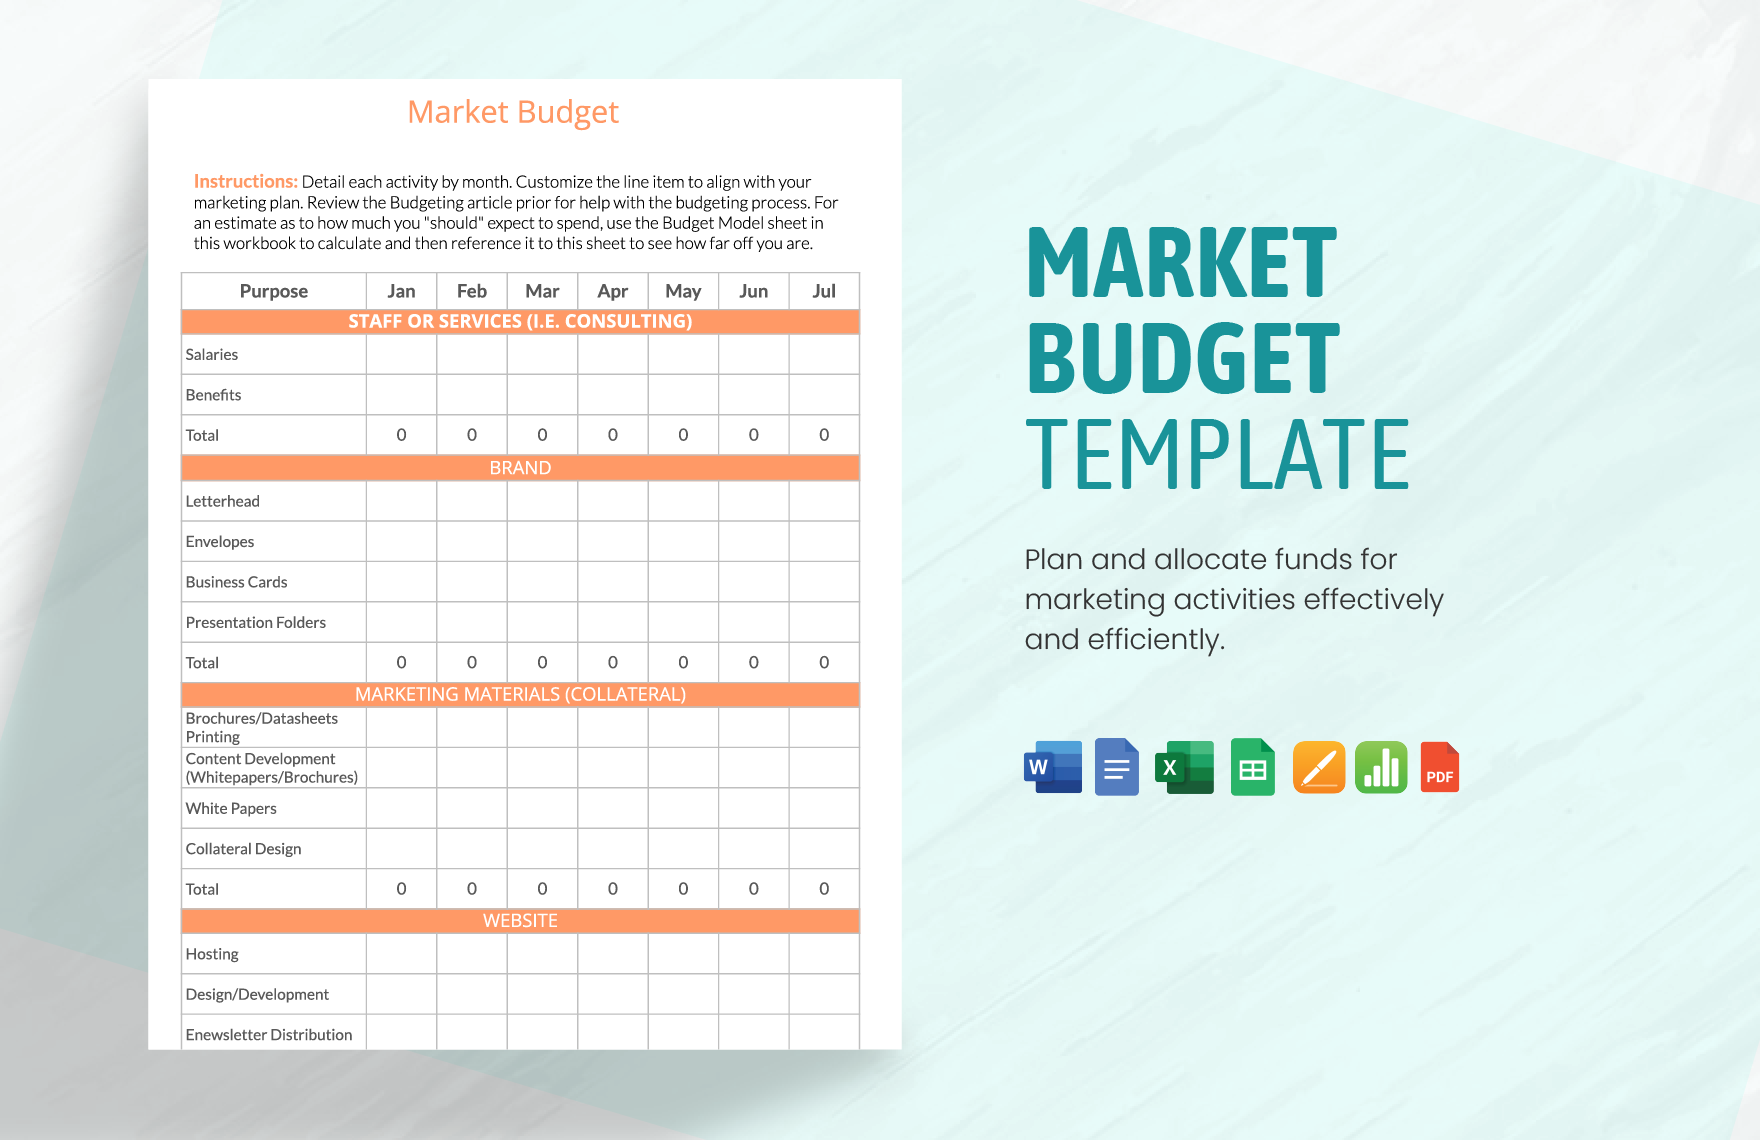 Market Budget Template